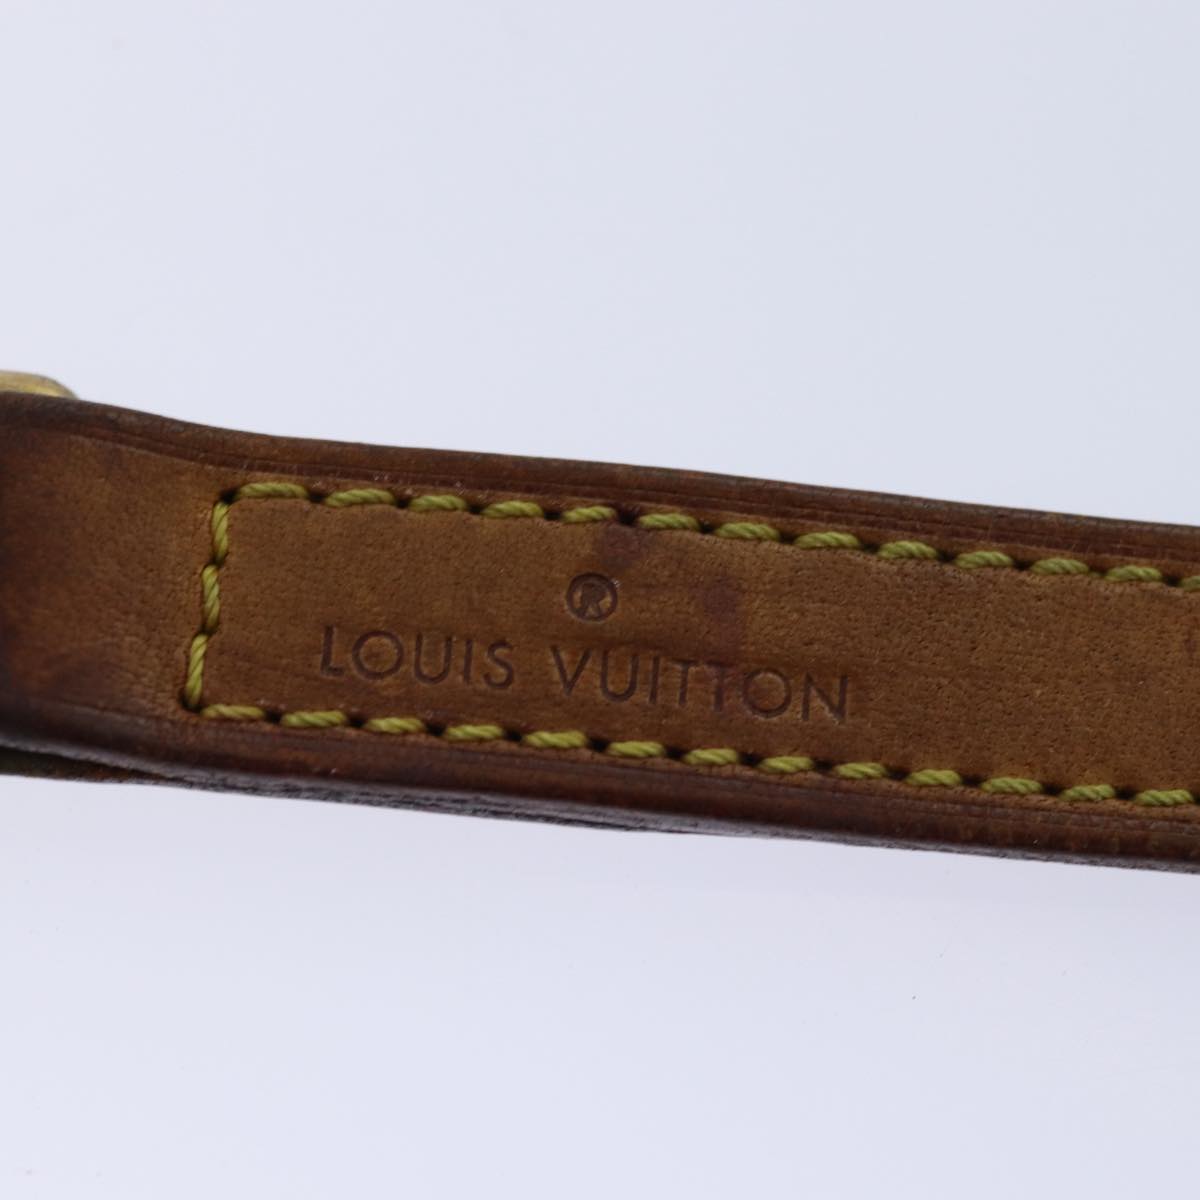 LOUIS VUITTON Shoulder Strap Leather 36.6"" Beige LV Auth 77244